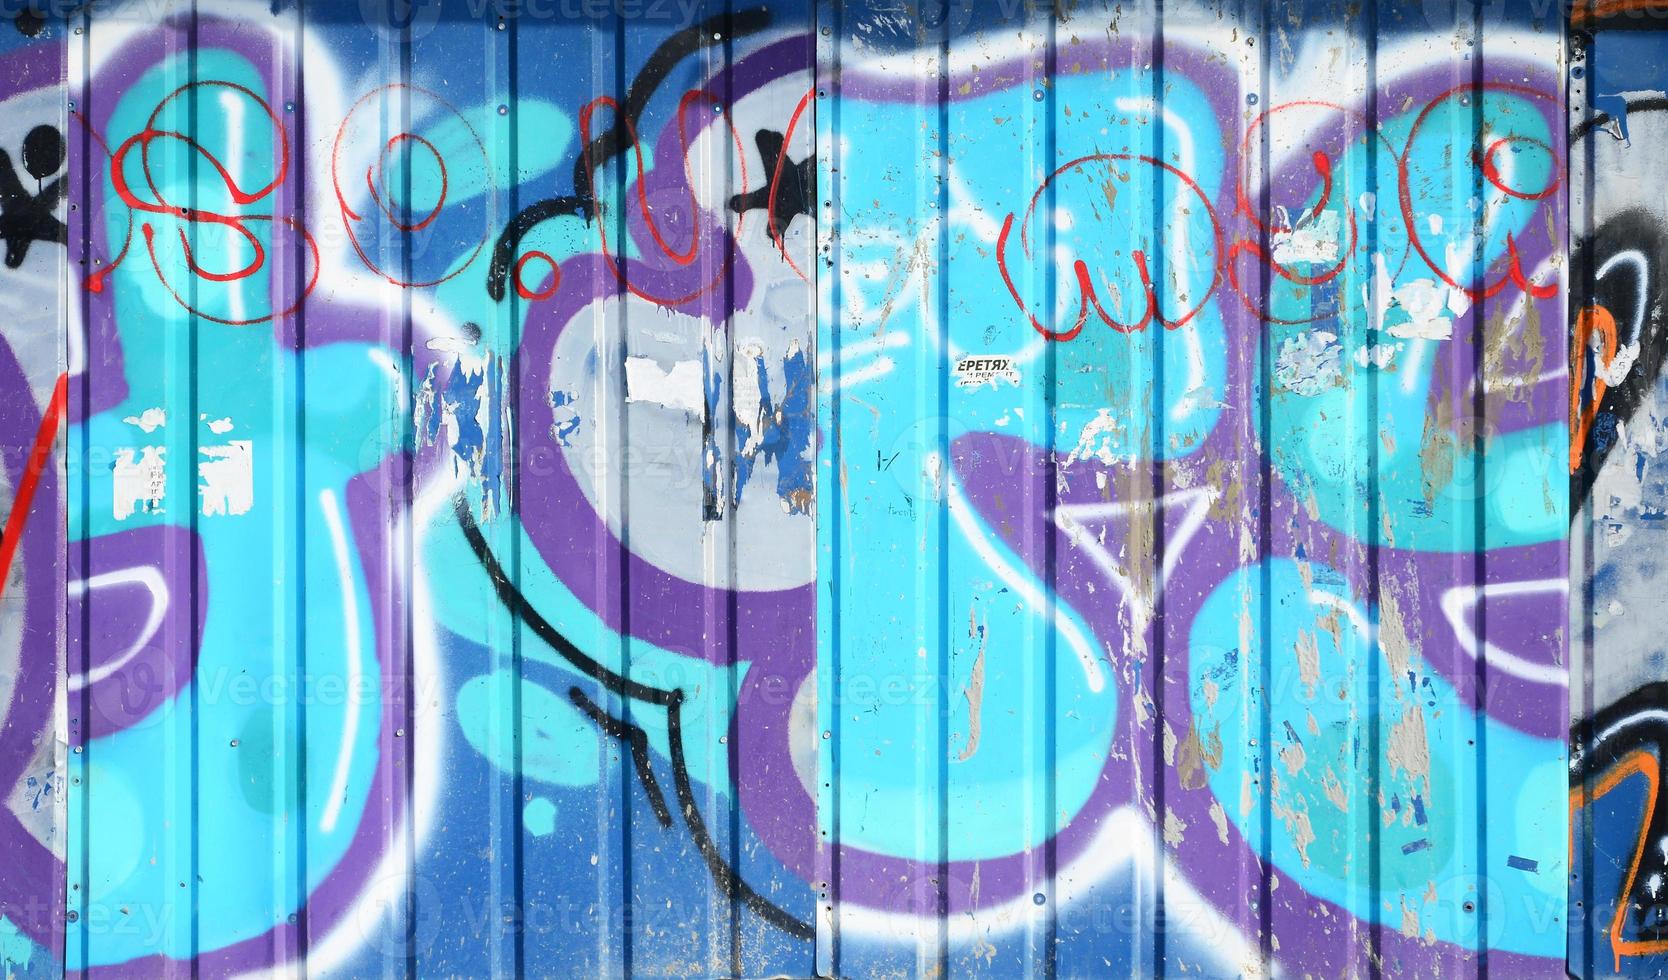 il vecchio parete, dipinto nel colore graffiti disegno blu aerosol vernici. sfondo Immagine su il tema di disegno graffiti e strada arte foto